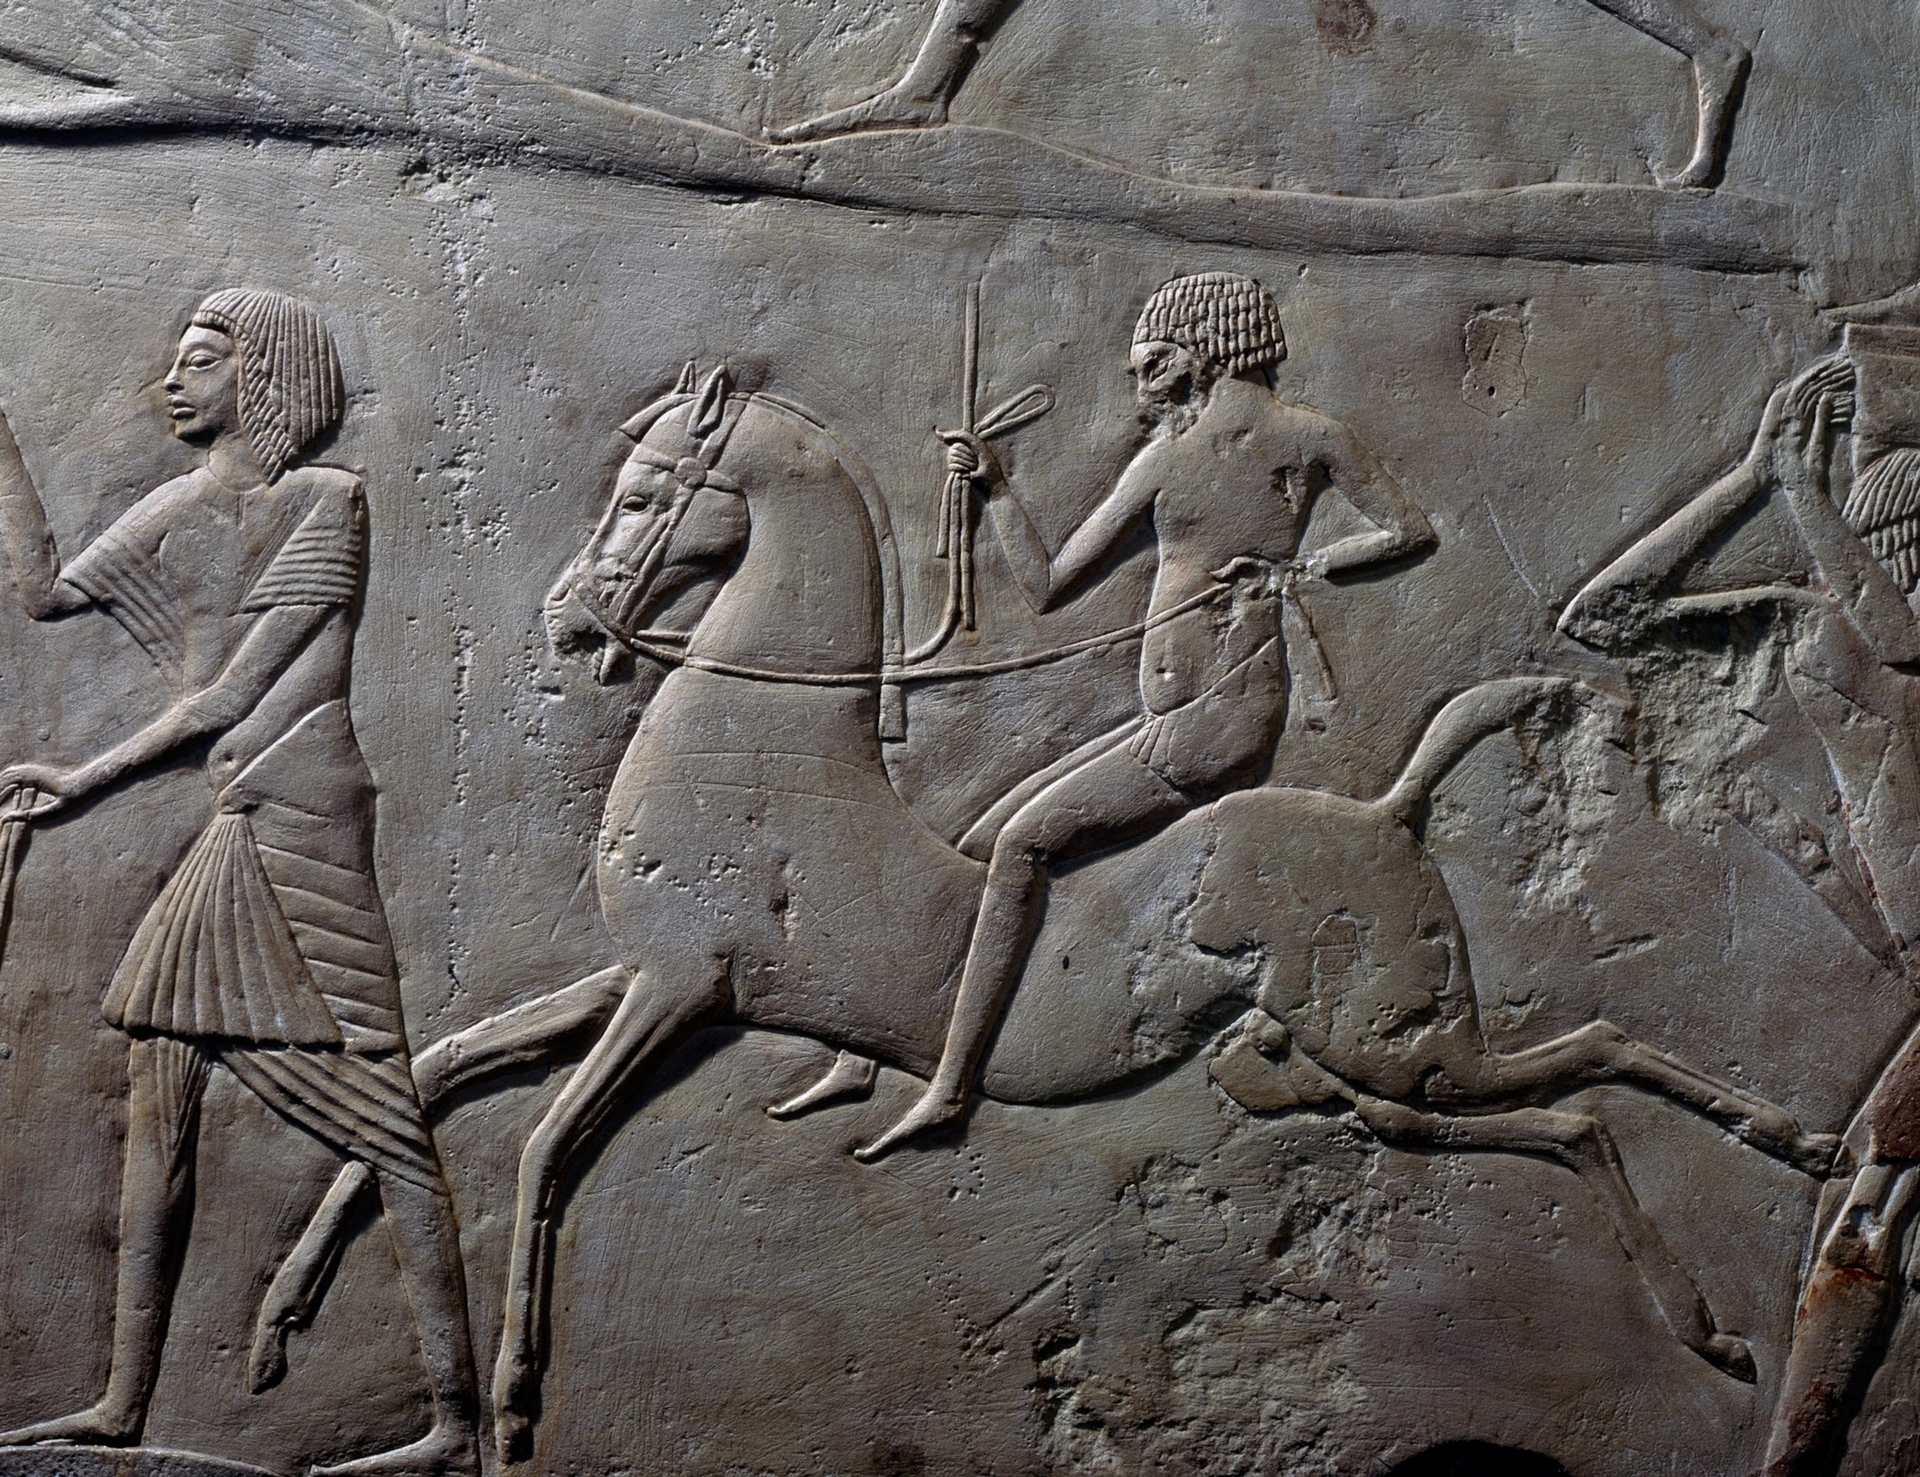 騎馬相關的描繪最早開始出現於青銅時代，例如位於埃及塞加拉（Saqqara）霍朗赫布墓（Tomb of Horemheb）中的這幅石灰岩浮雕。類似描繪出現的年代比最近於歐洲東南部發現的可能曾為馬背騎士的遺骸晚了大約1500年。PHOTOGRAPH BY DEAGOSTINI, GETTY IMAGES 